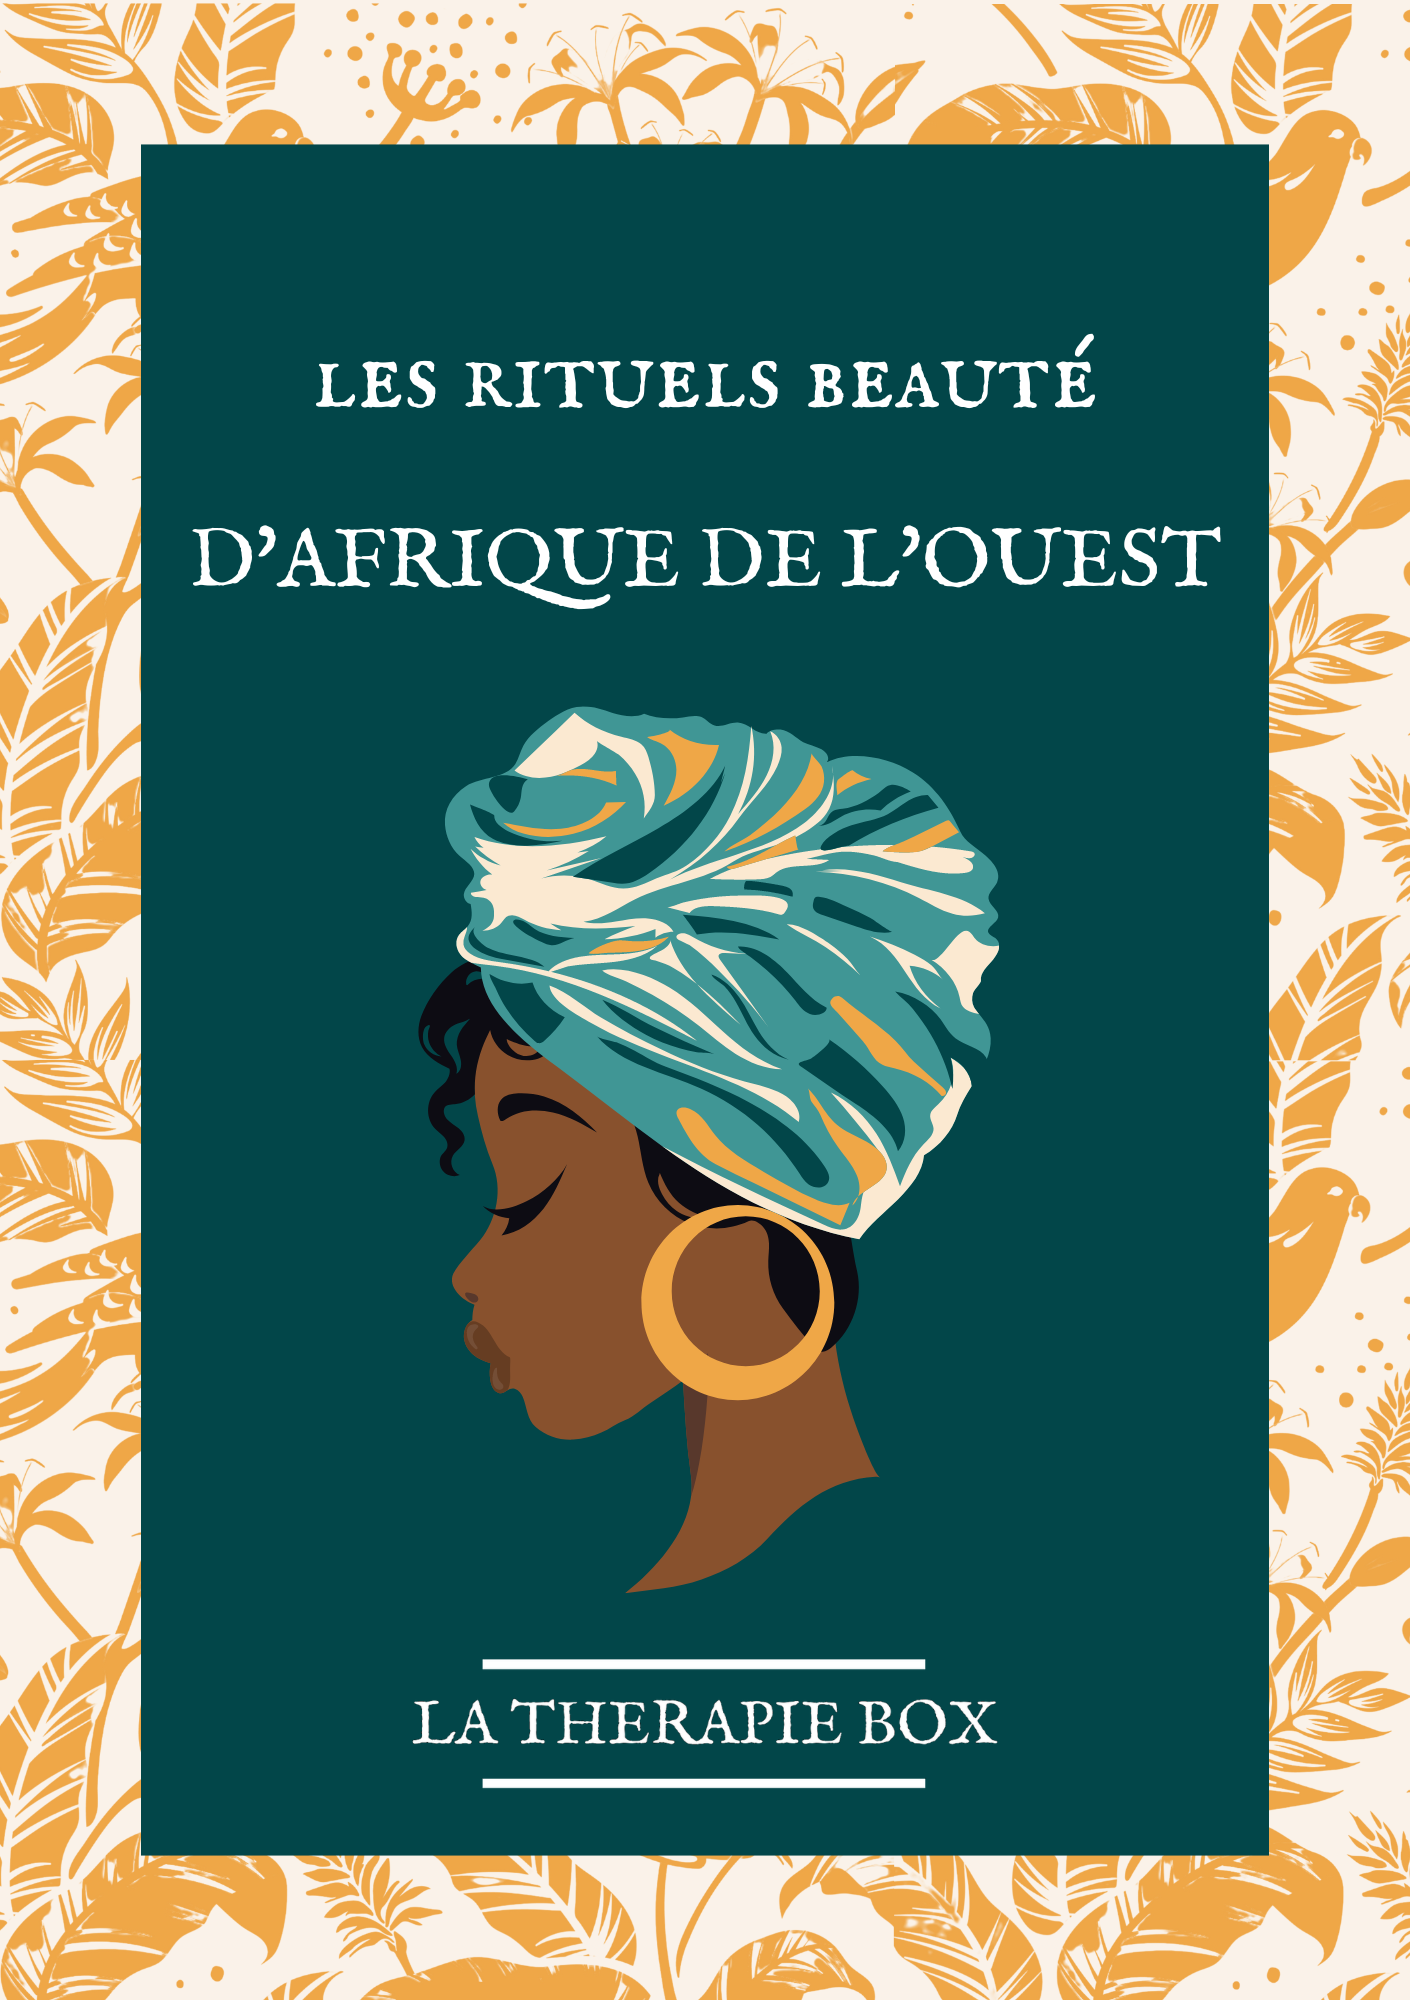 1147-e-book---afrique-de-louest-16863008807729.png